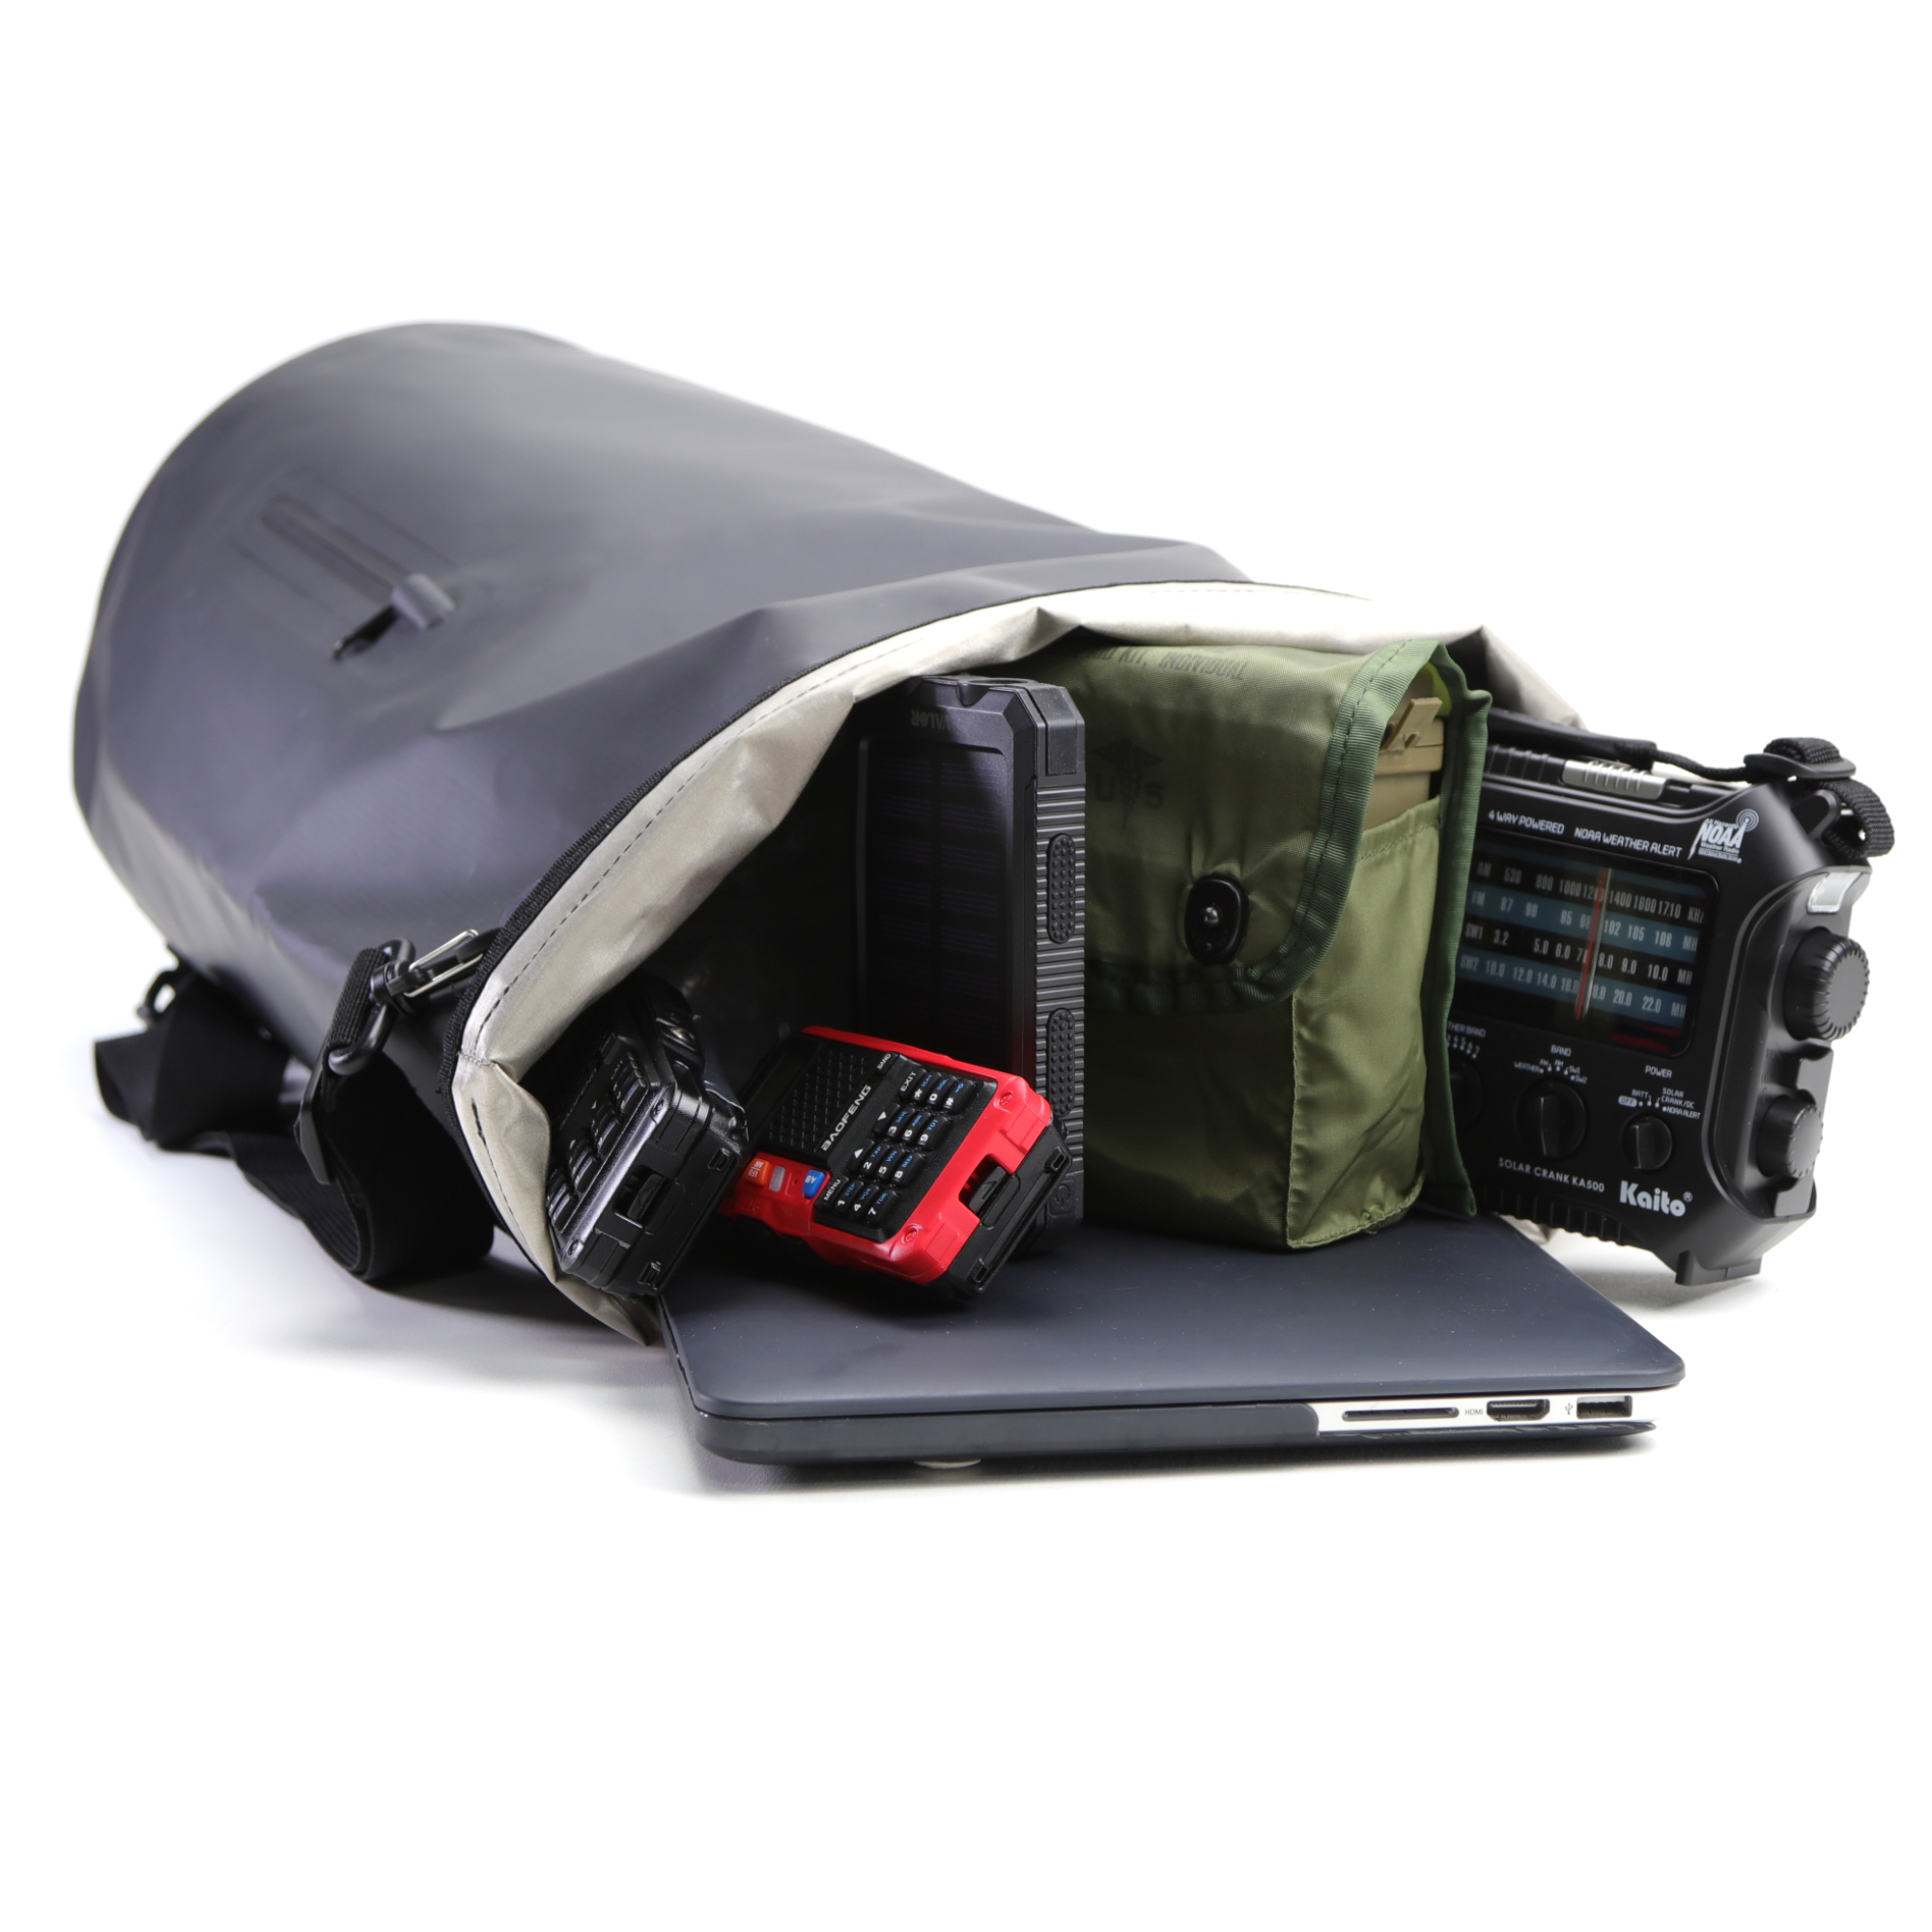 Faraday Dry Bag Sling Pack – Practical Disaster Preparedness for